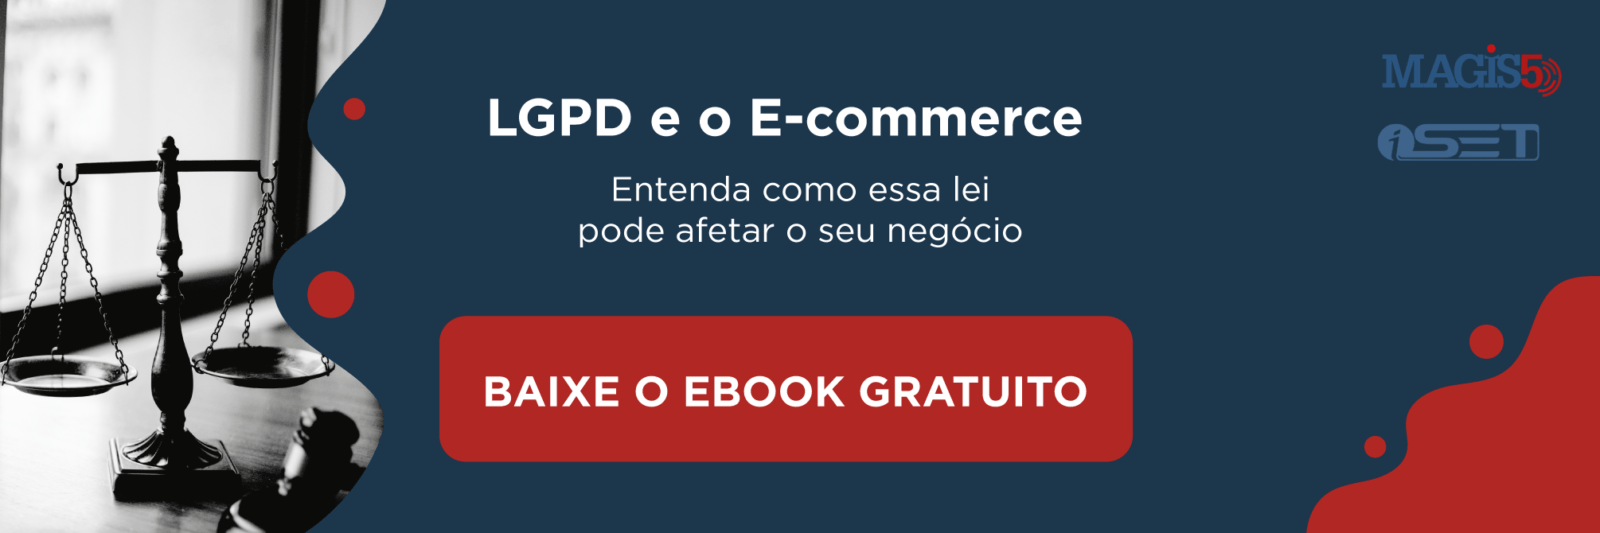 Ebook LGPD no Ecommerce Download Grátis